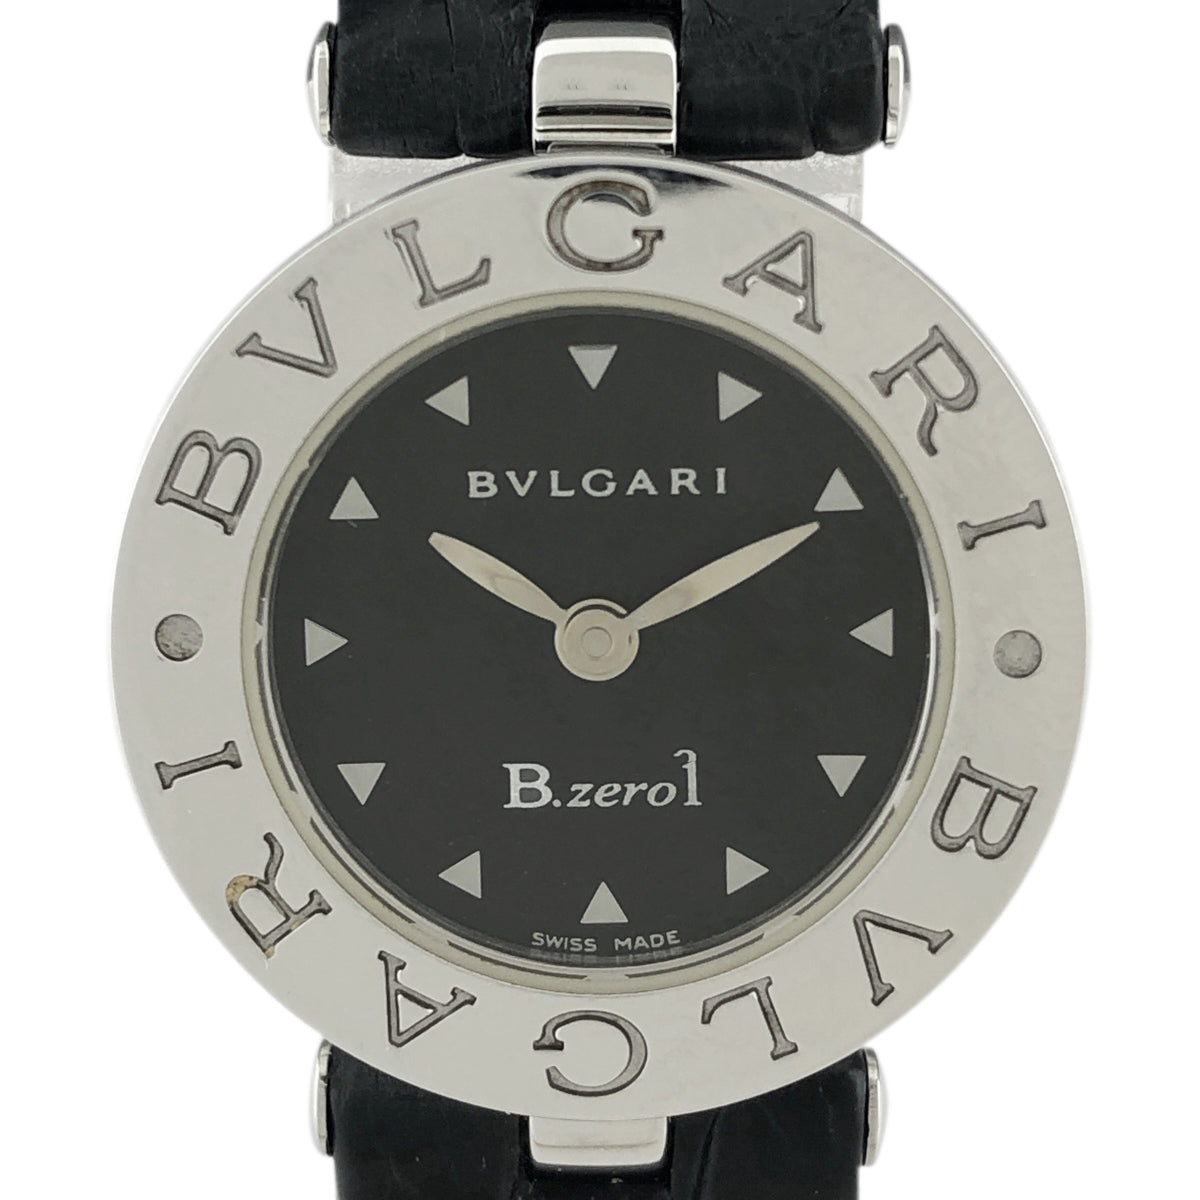 ブルガリ ビーゼロワン 腕時計 クオーツ ブラック 黒ステンレススチールSS